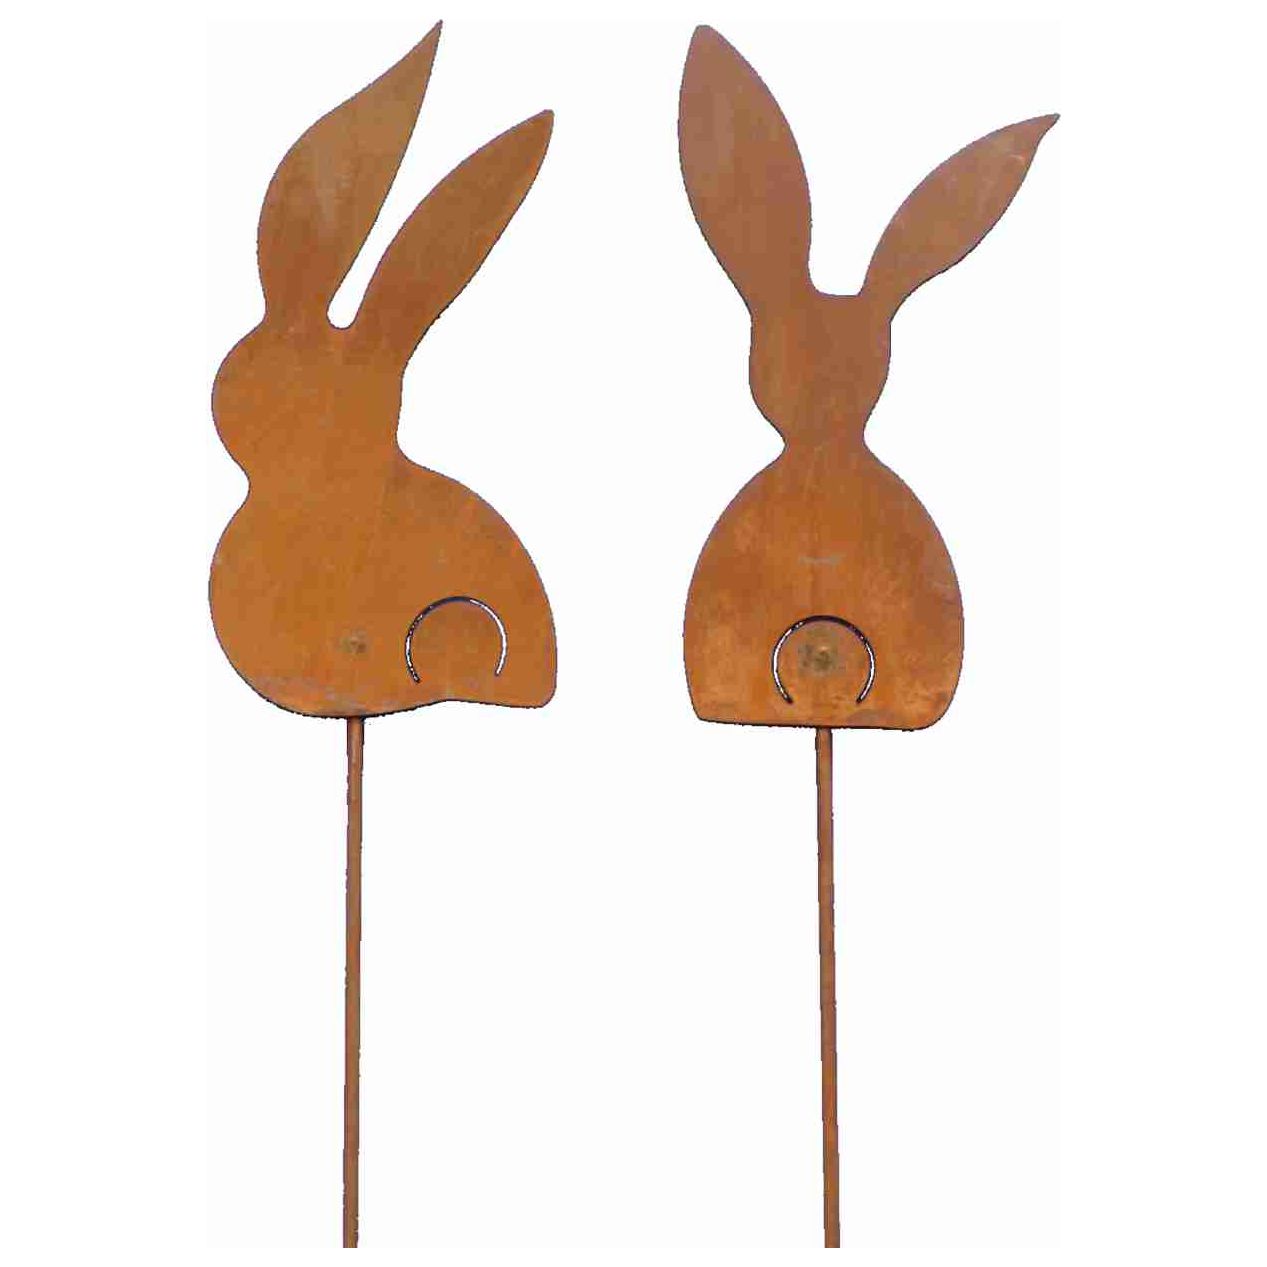 Handgefertigte Osterdeko-Metallhasen als Gartenstecker - Rostikal Manufaktur. Diese rostigen Hasen sind eine perfekte Osterdekoration für Garten und Haus.